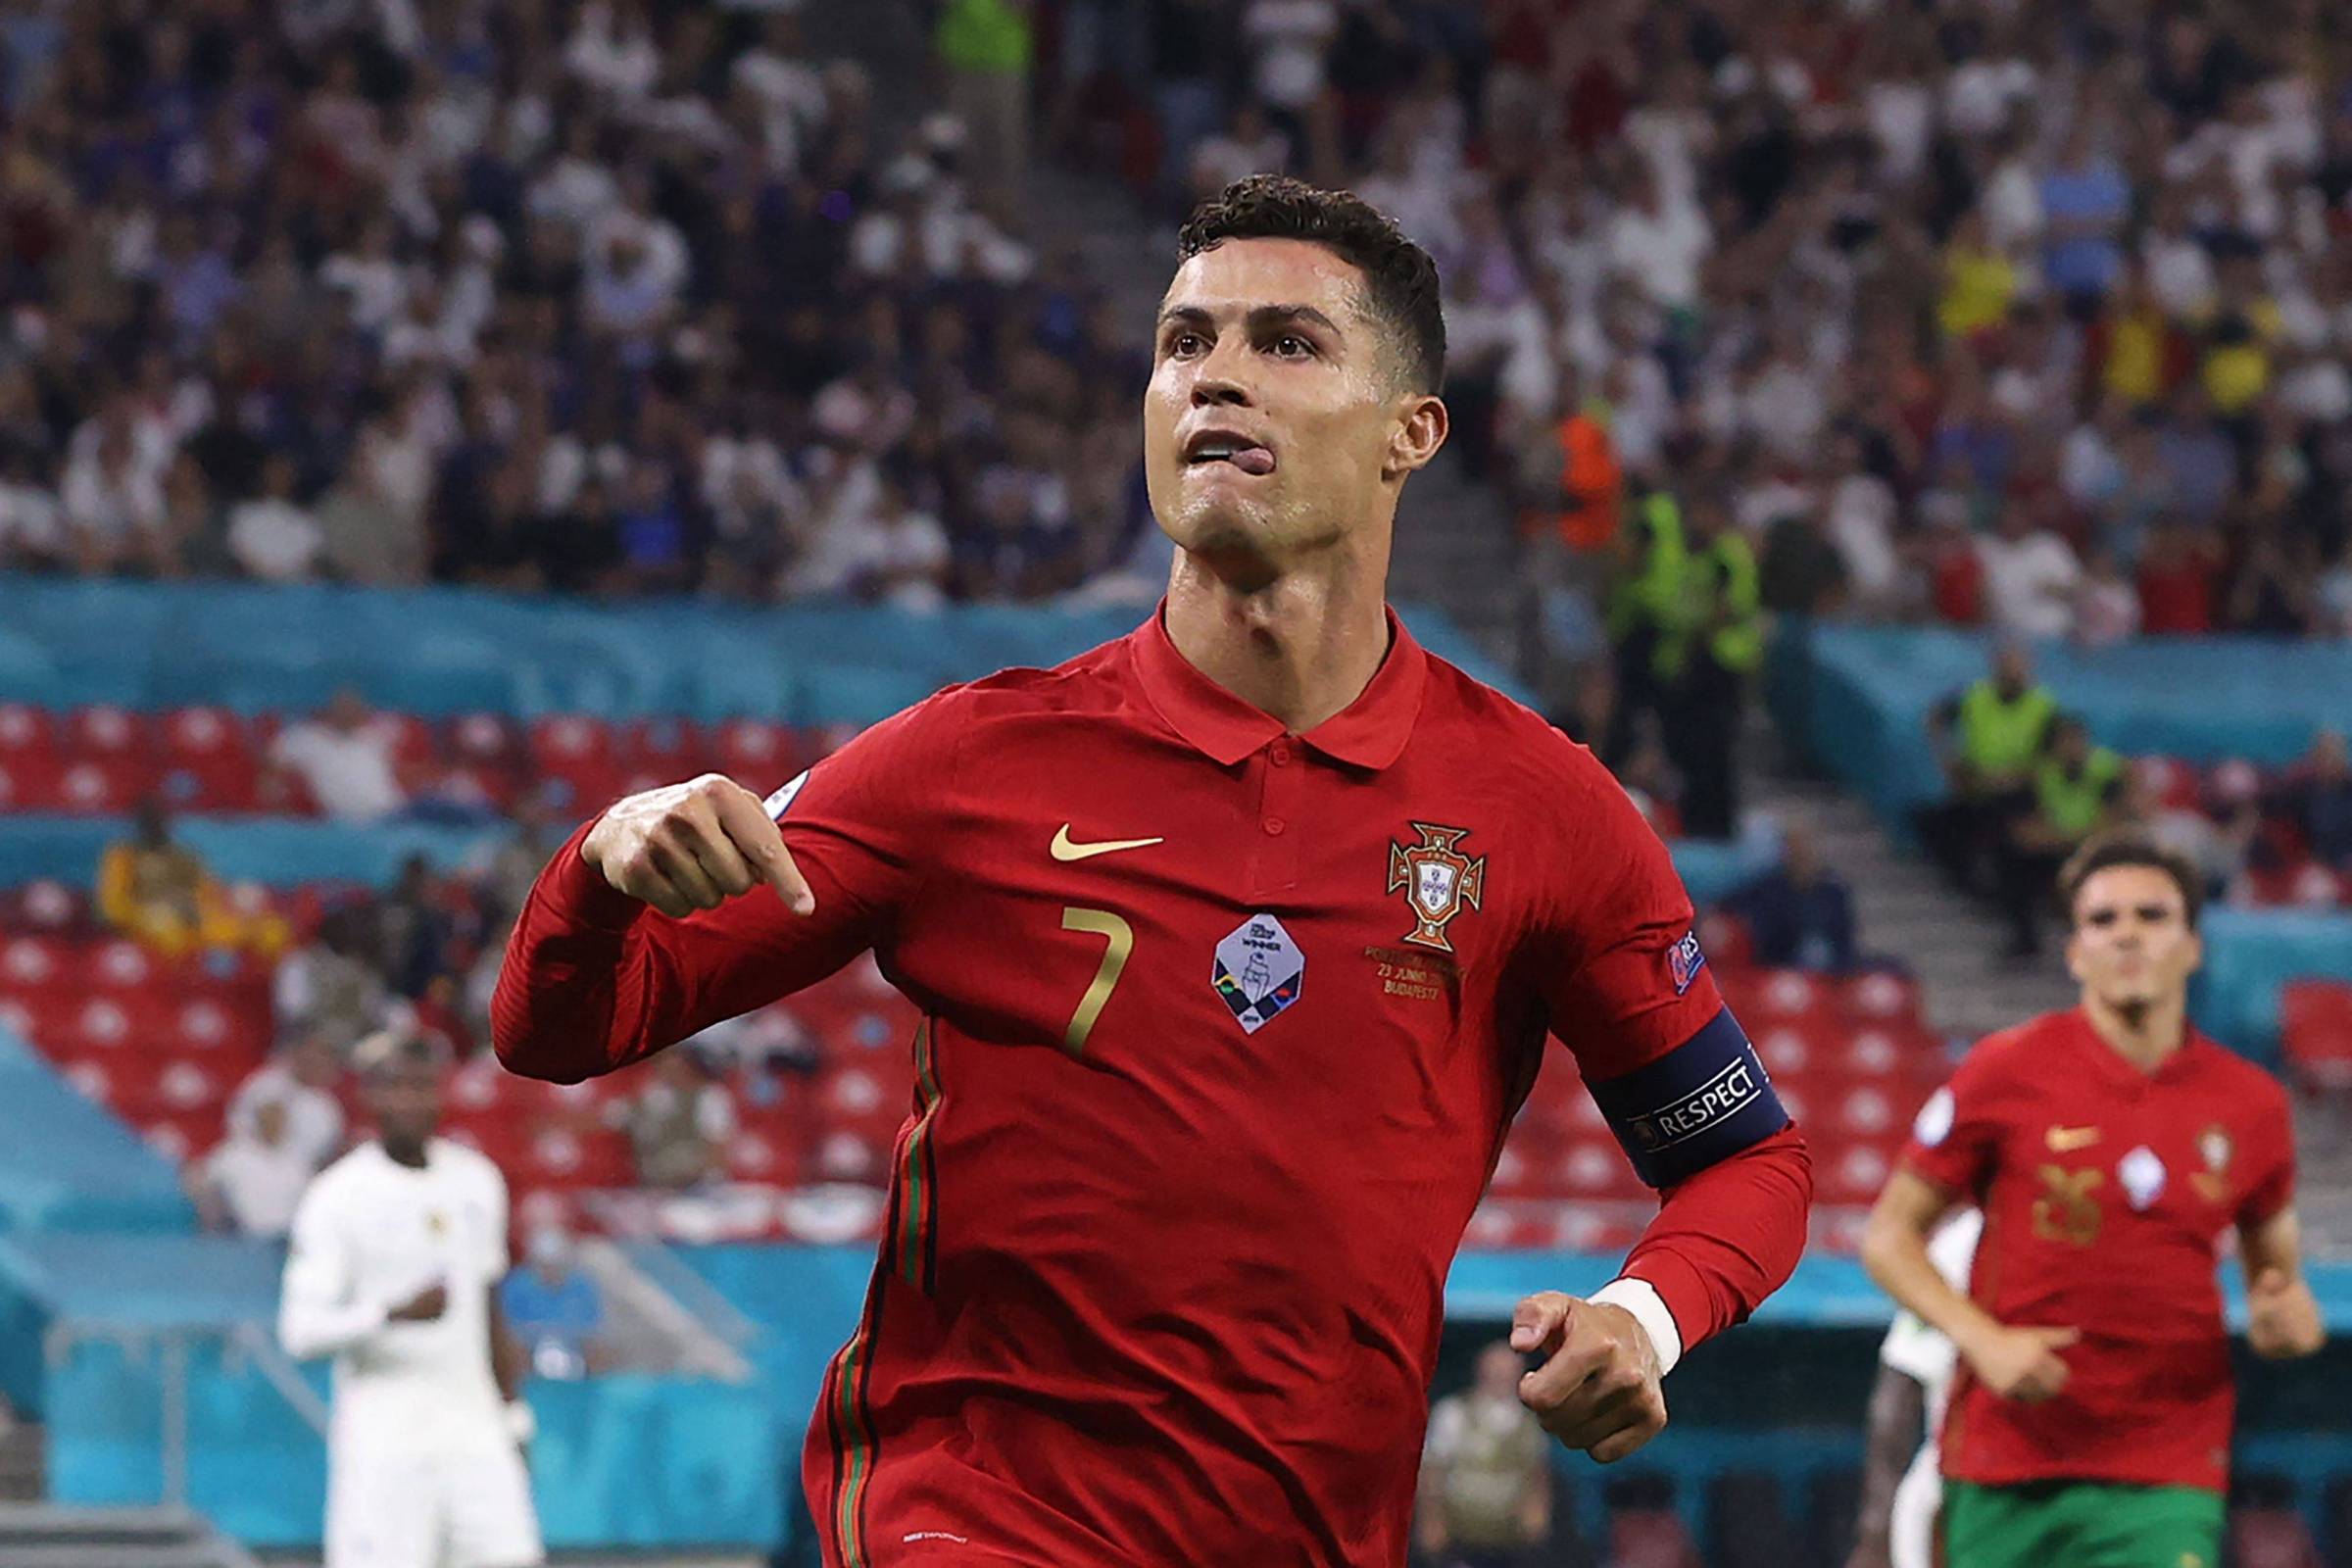 Bis de Ronaldo garante Portugal nos oitavos-de-final, UEFA EURO